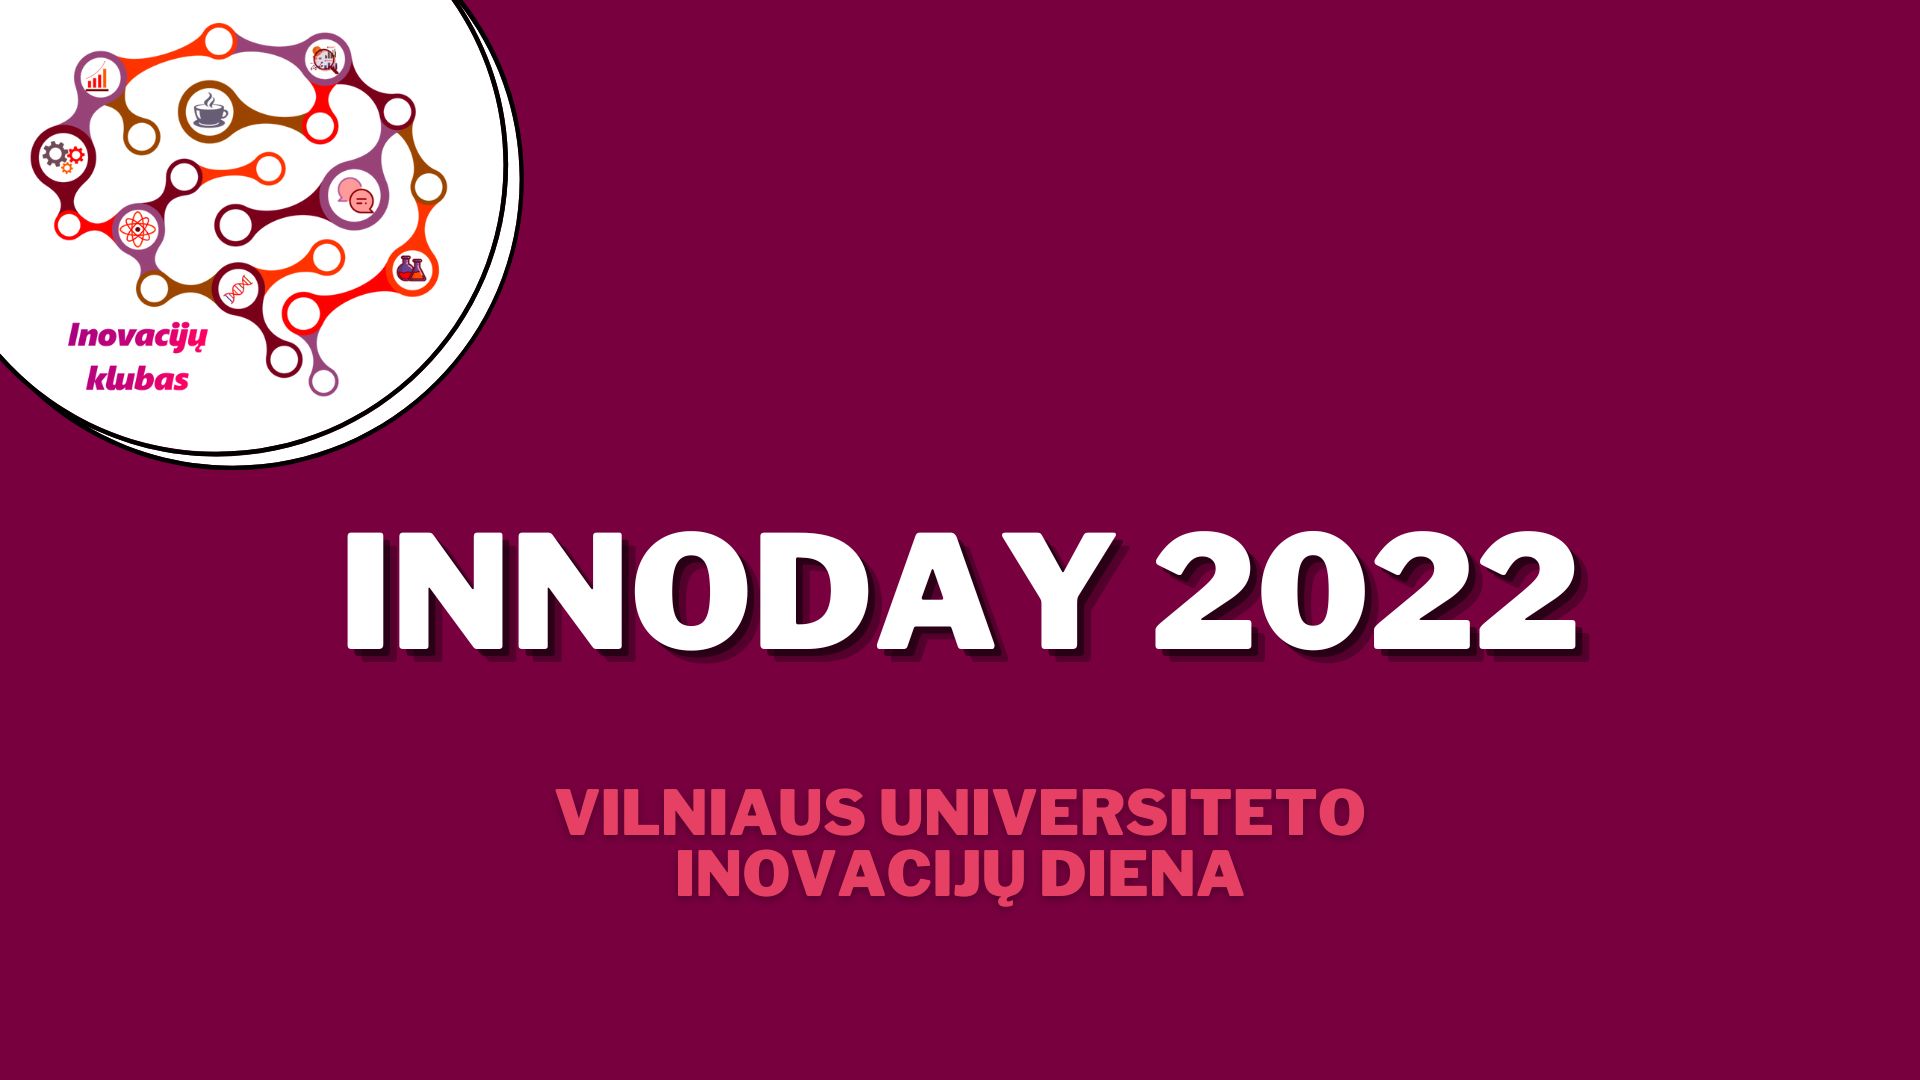 Vilniaus universiteto Inovacijų diena INNOday 2022